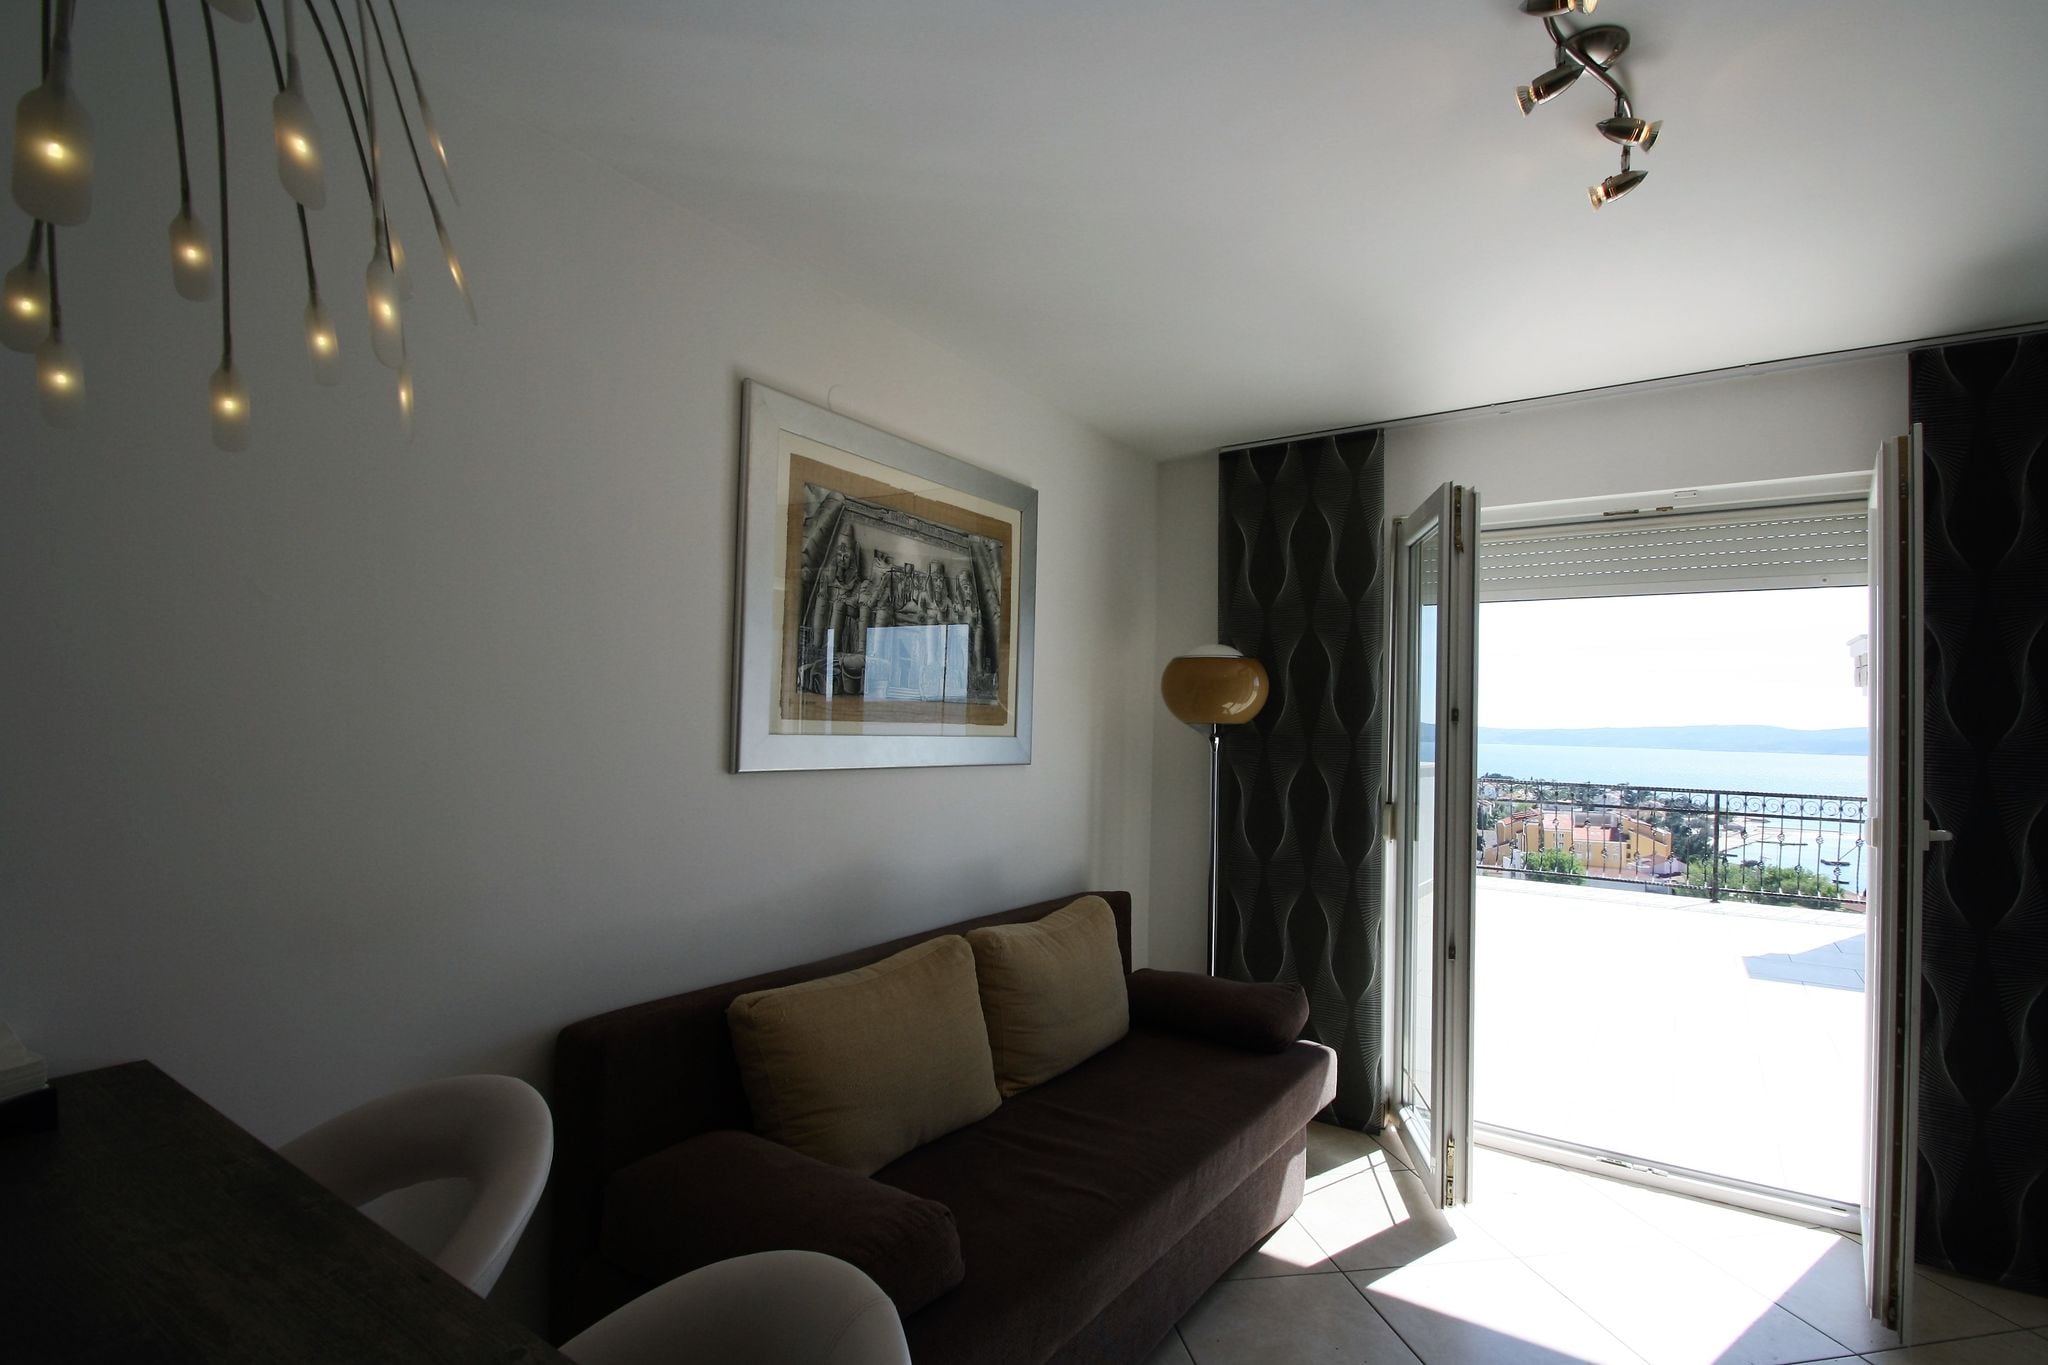 Mooi modern appartement voor maximaal 5 personen met een prachtig uitzicht op zee